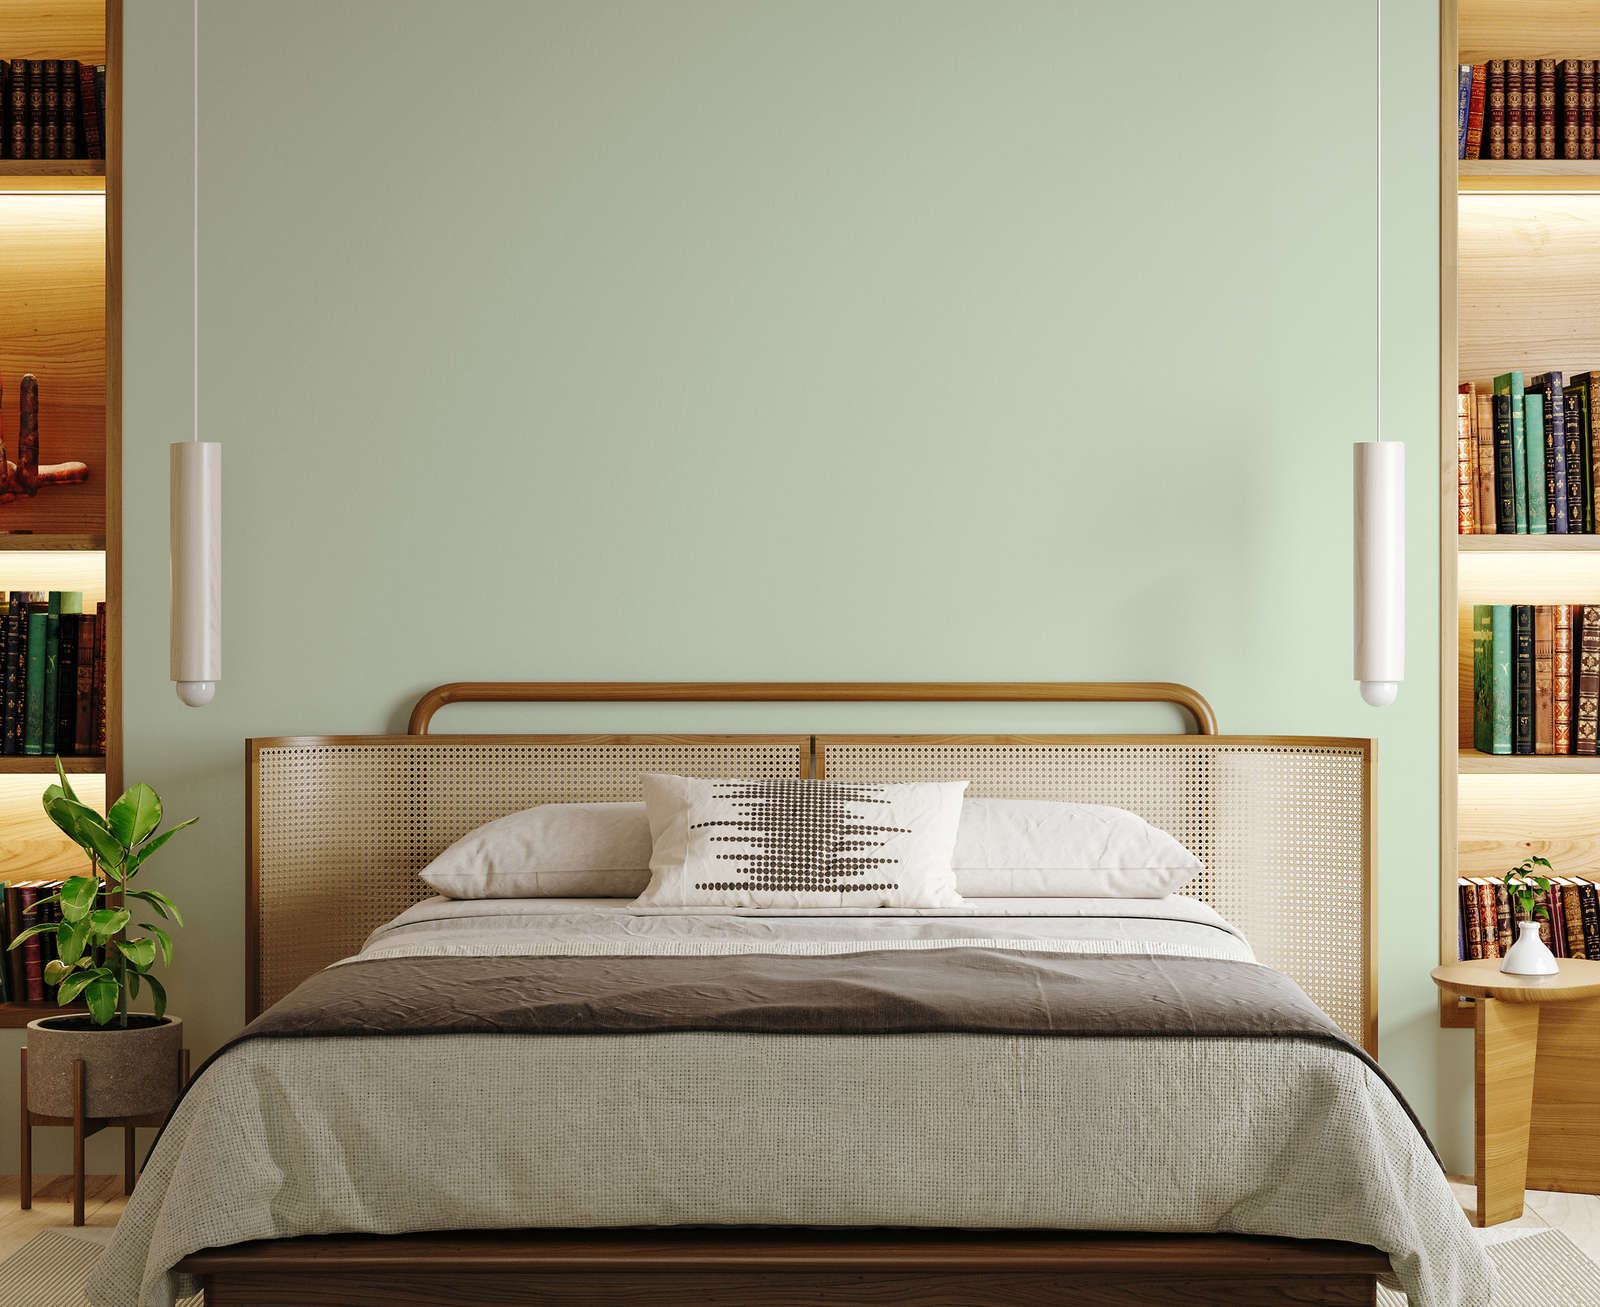             Premium Wandfarbe aufweckendes Pastellgrün »Sweet Sage« NW400 – 5 Liter
        